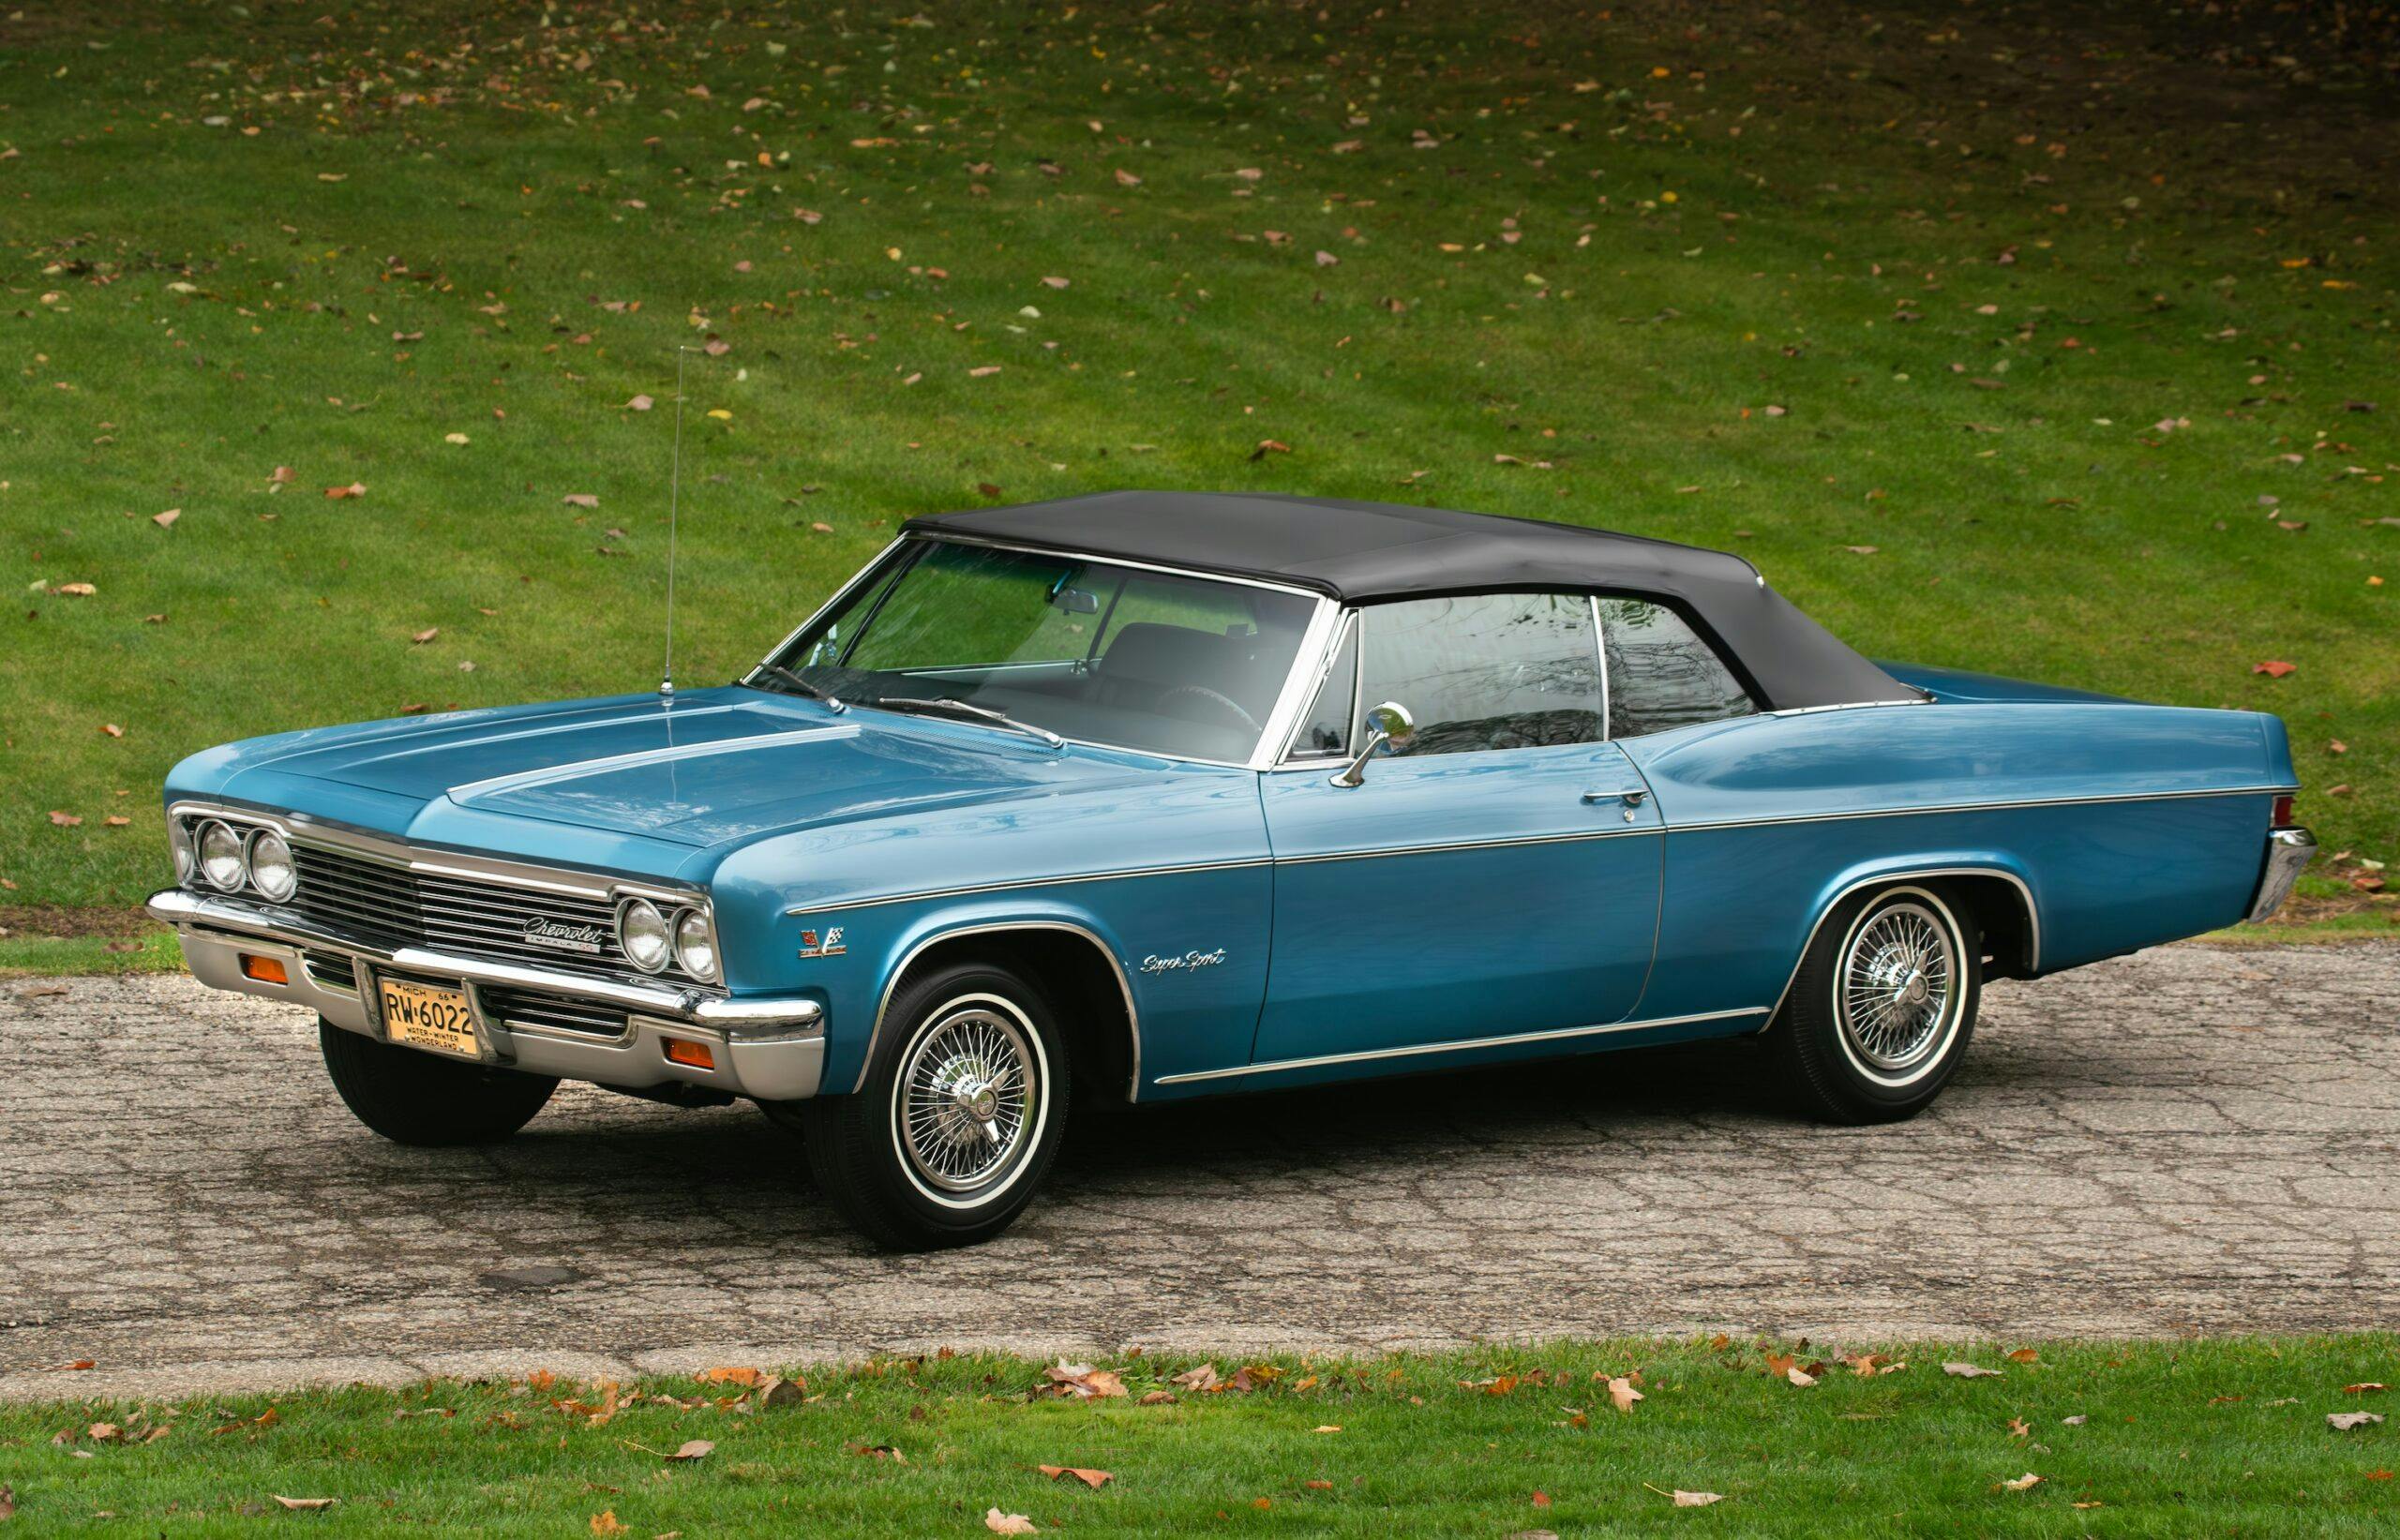 1966 Impala Super Sport convertible front three quarter